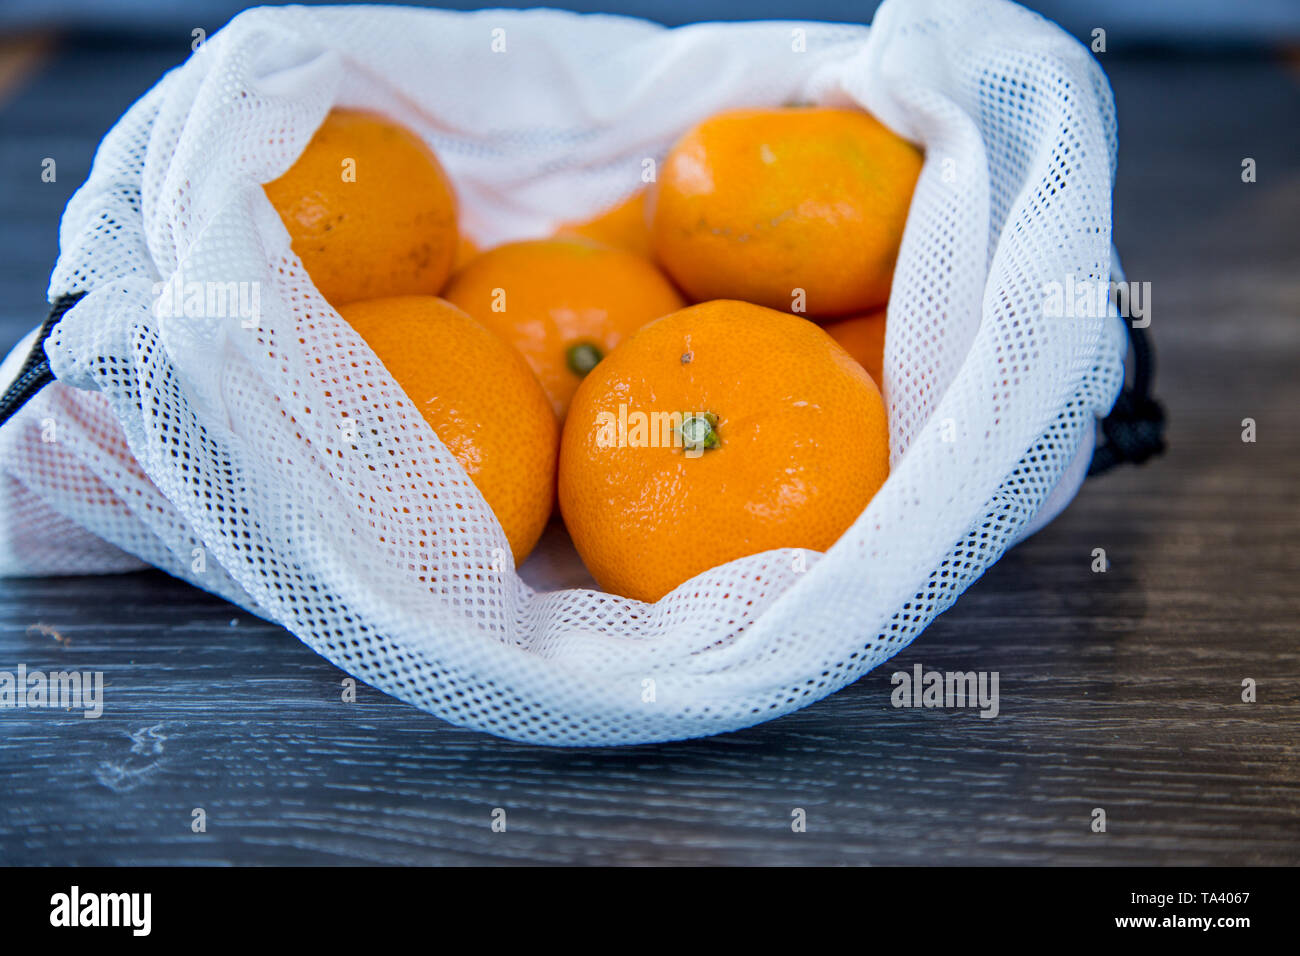 Mandarini acquistati al supermercato in un riutilizzabili per produrre borsa riutilizzato da uso singola soft di sacchetti di plastica. Rispettosi dell'ambiente scelta. Foto Stock